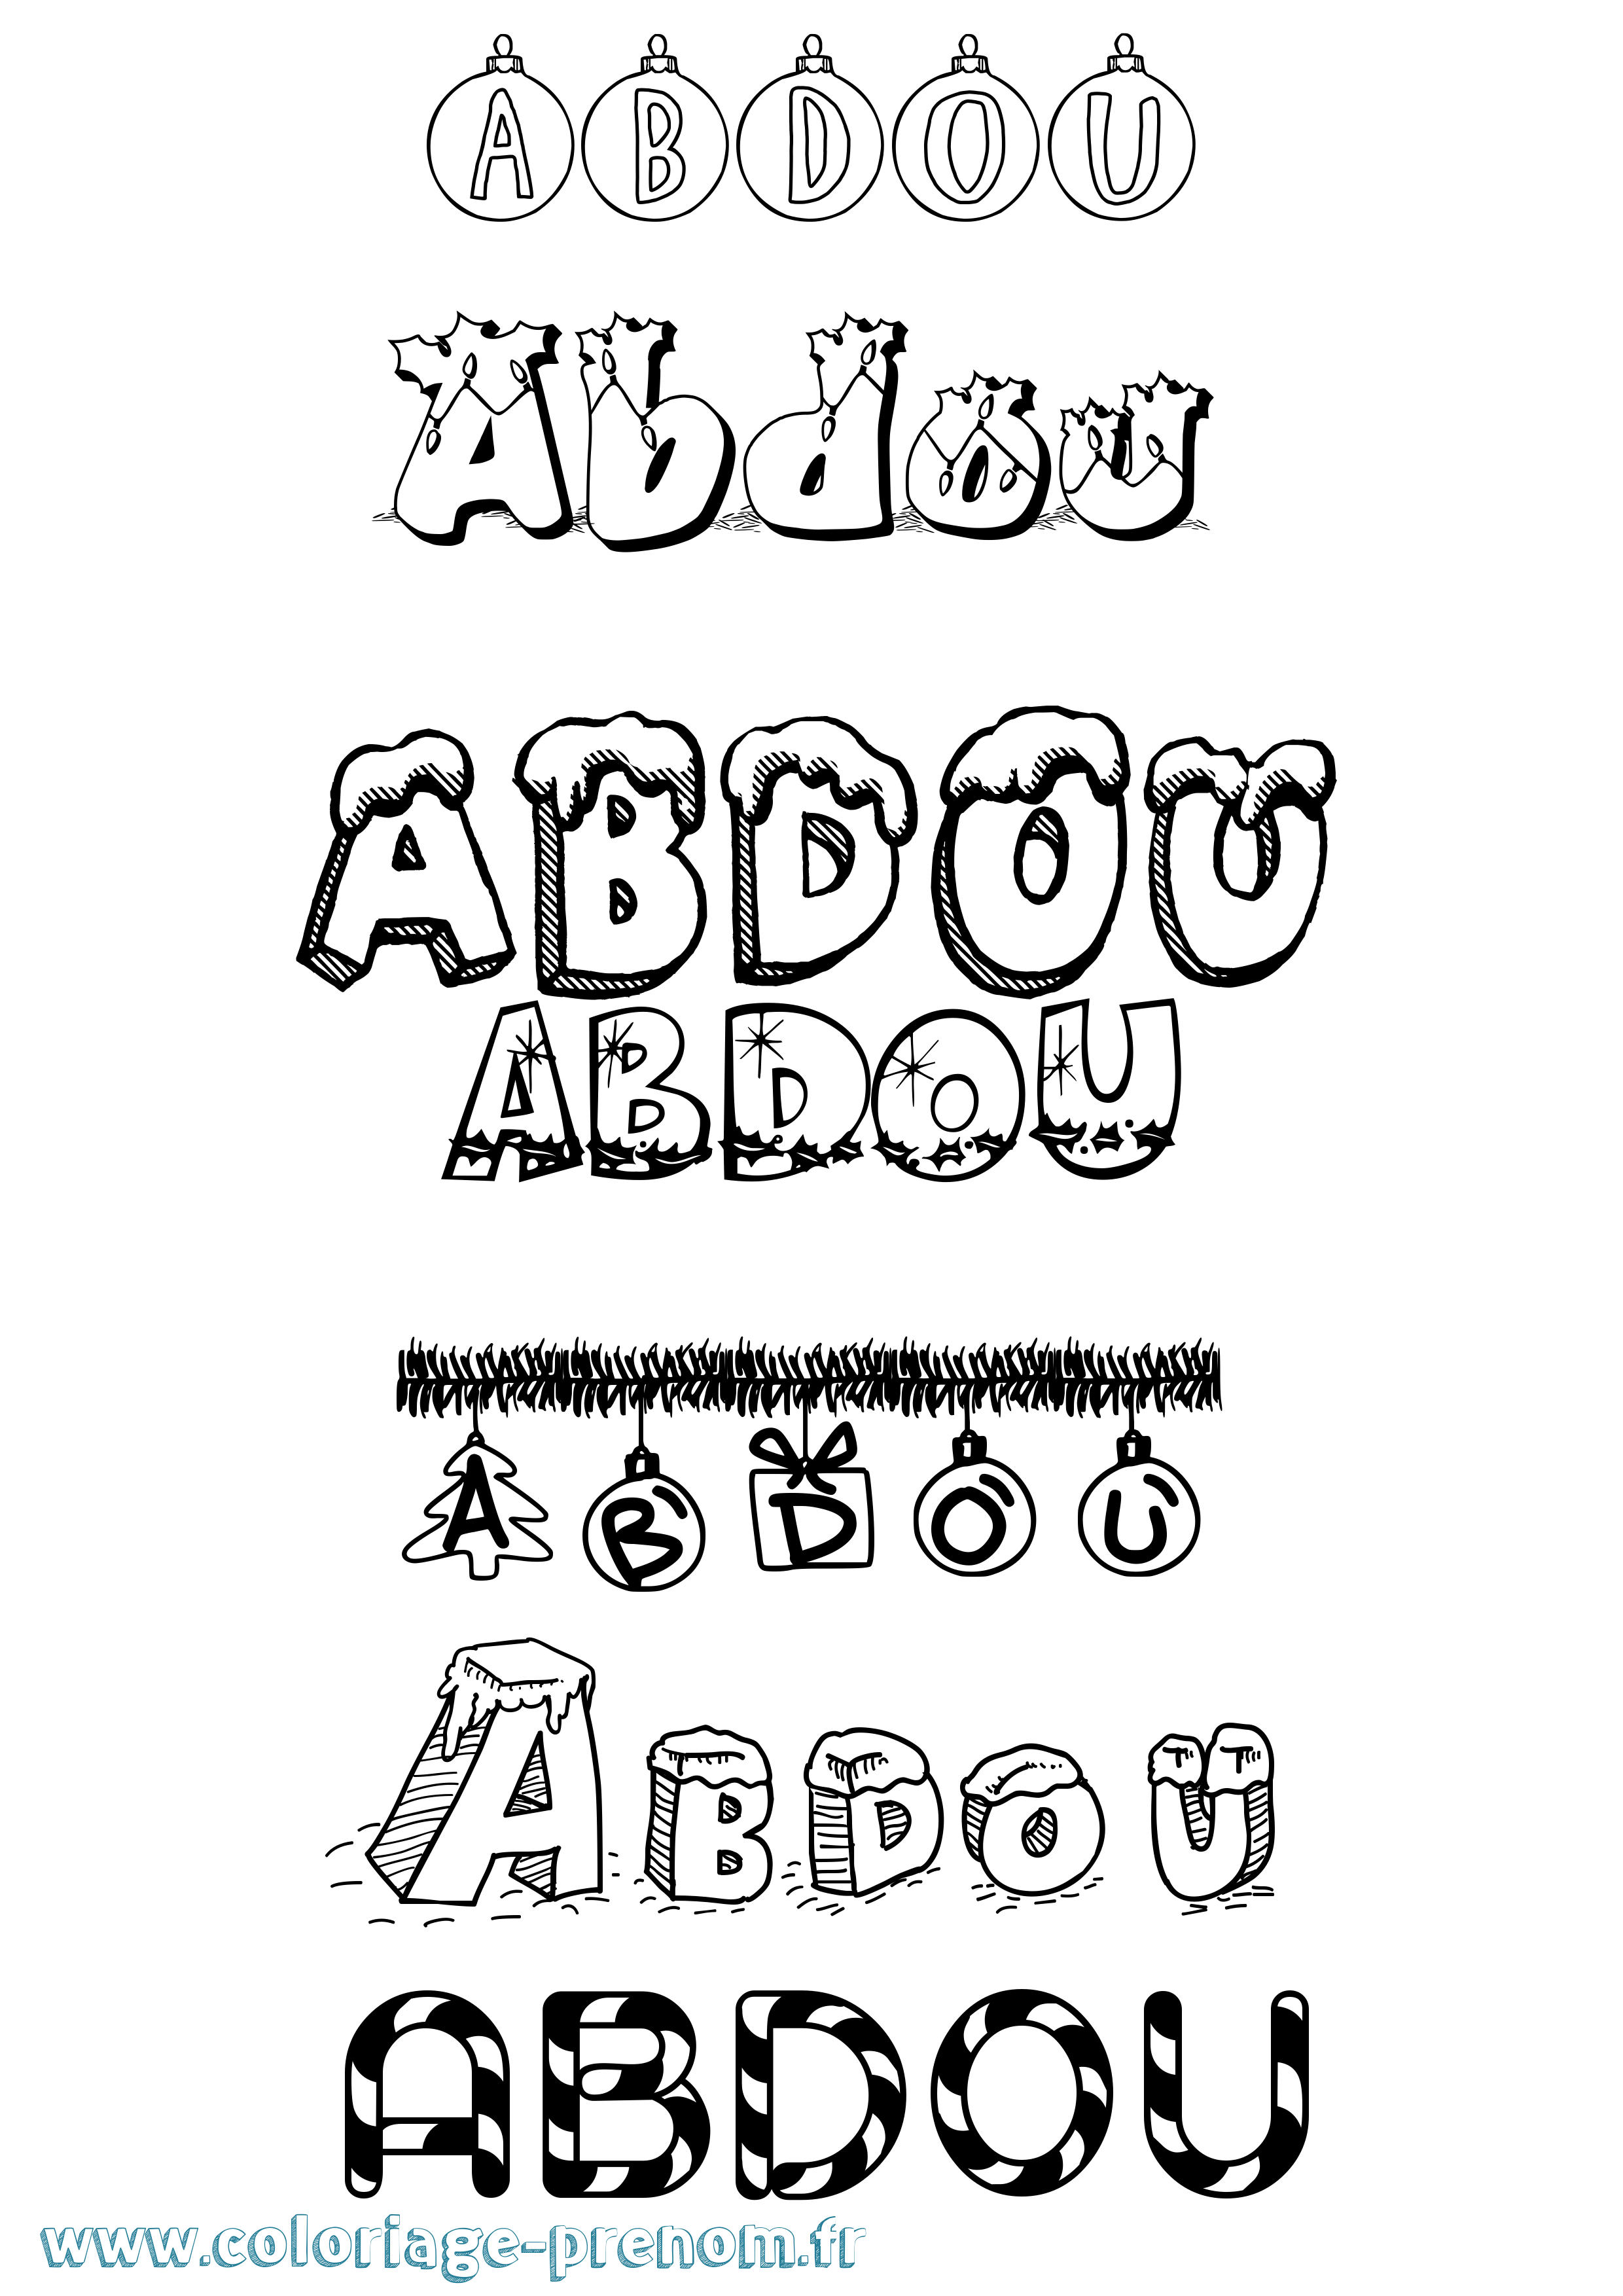 Coloriage prénom Abdou